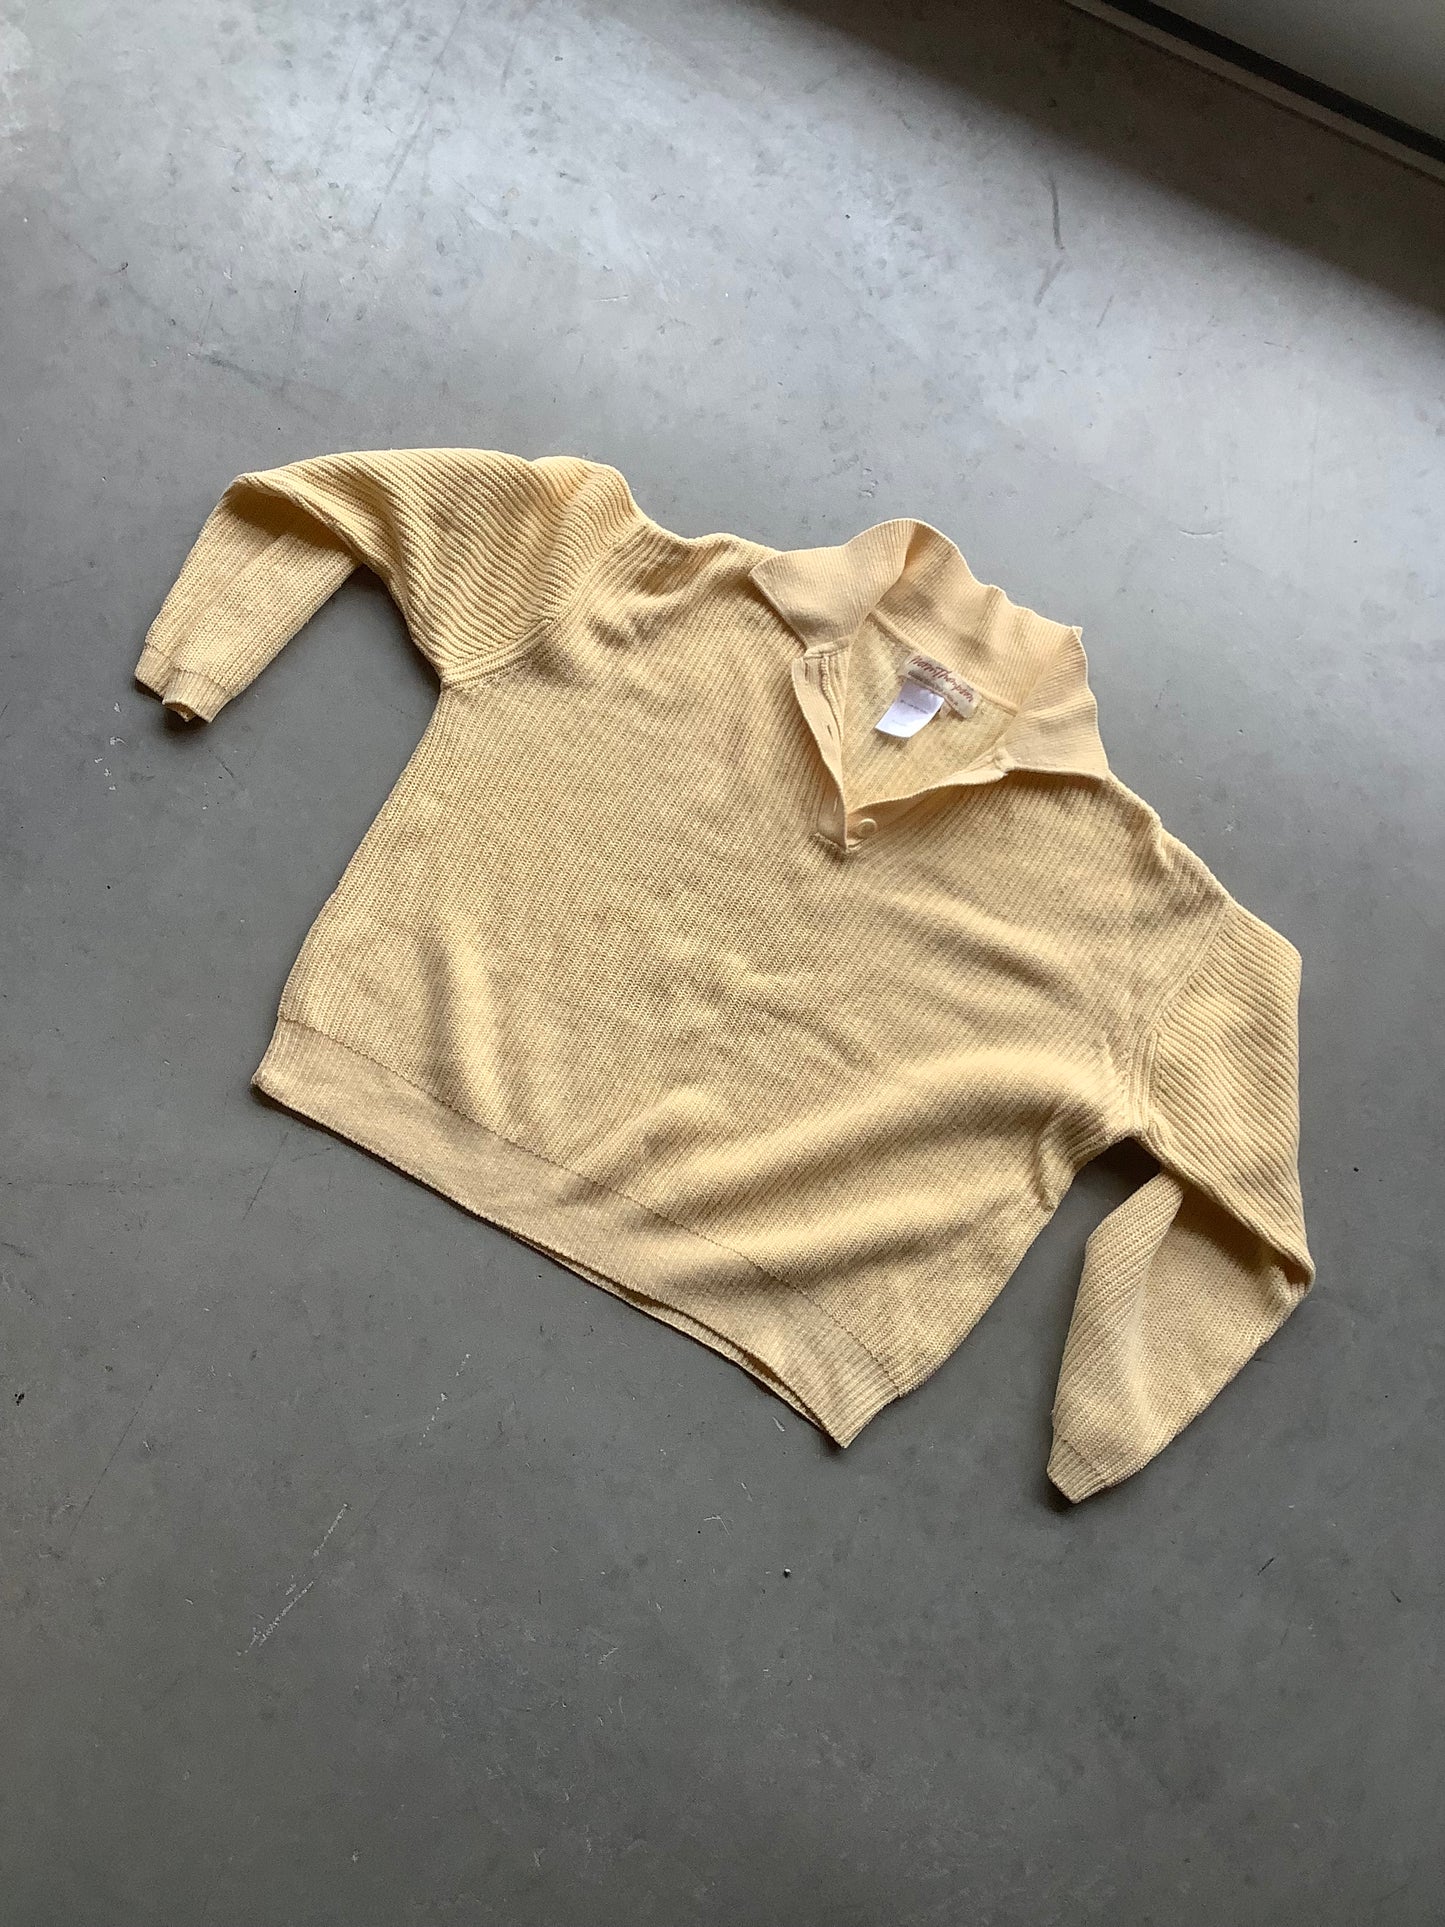 Butter yellow linen sweater